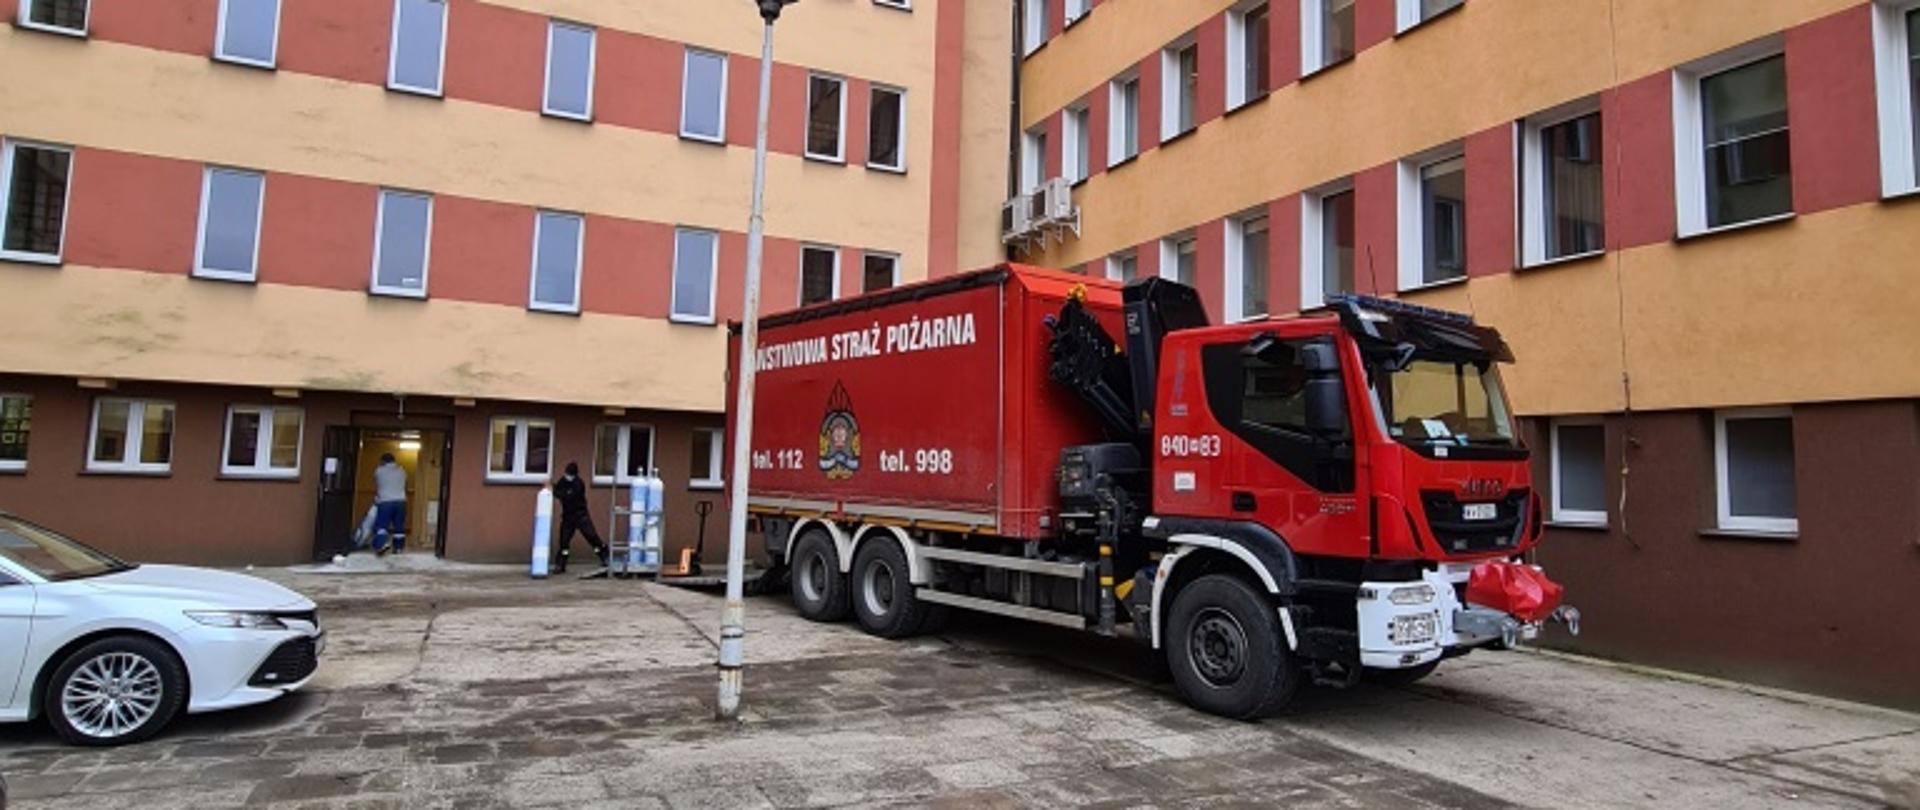 Zdjęcie przedstawia pojazd ciężarowy w kolorze czerwonym z białymi elementami zabudowy, ustawiony przy budynku szpitala powiatowego w Kozienicach. Pojazdem tym zostały dostarczone butle z tlenem medycznym. 